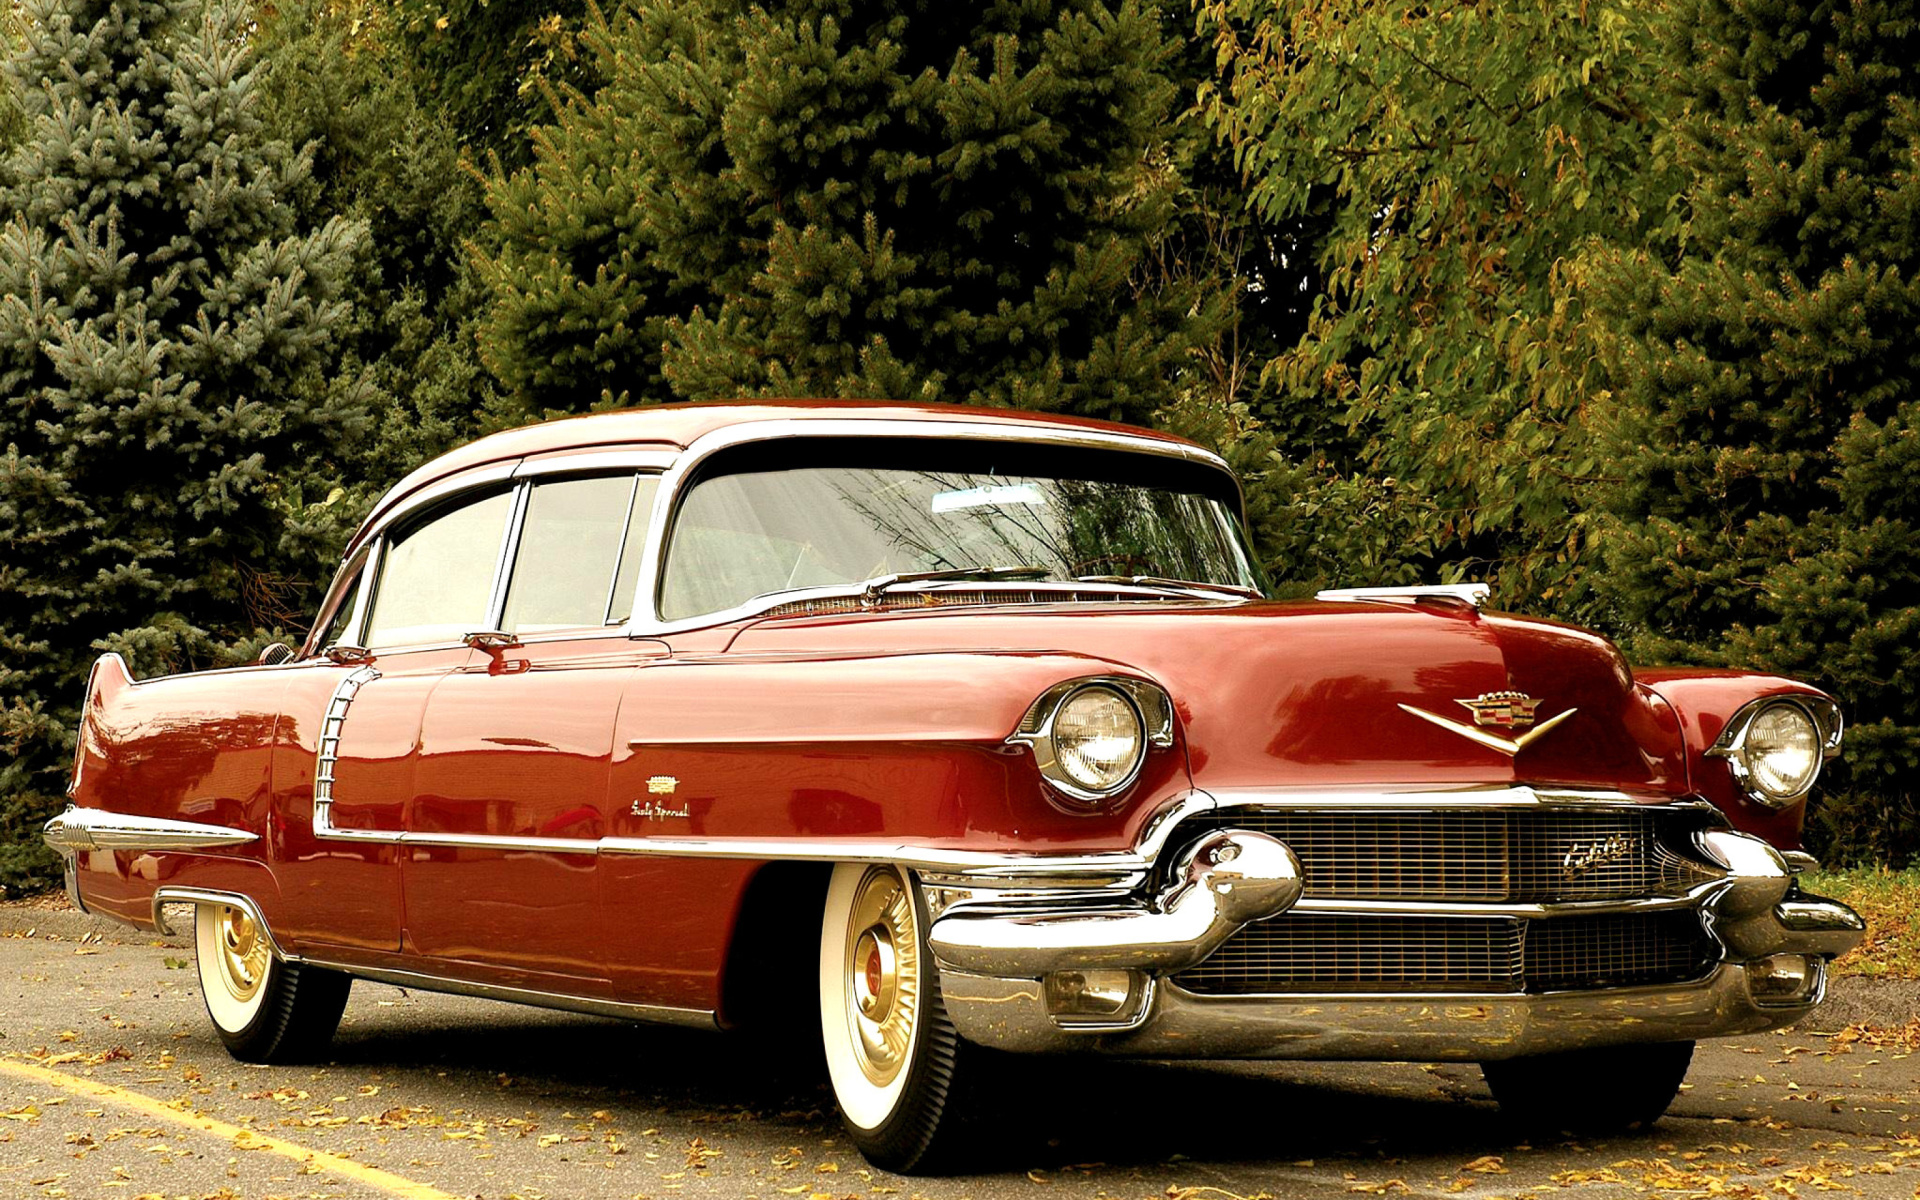 1956 Cadillac Maharani wallpaper 1920x1200